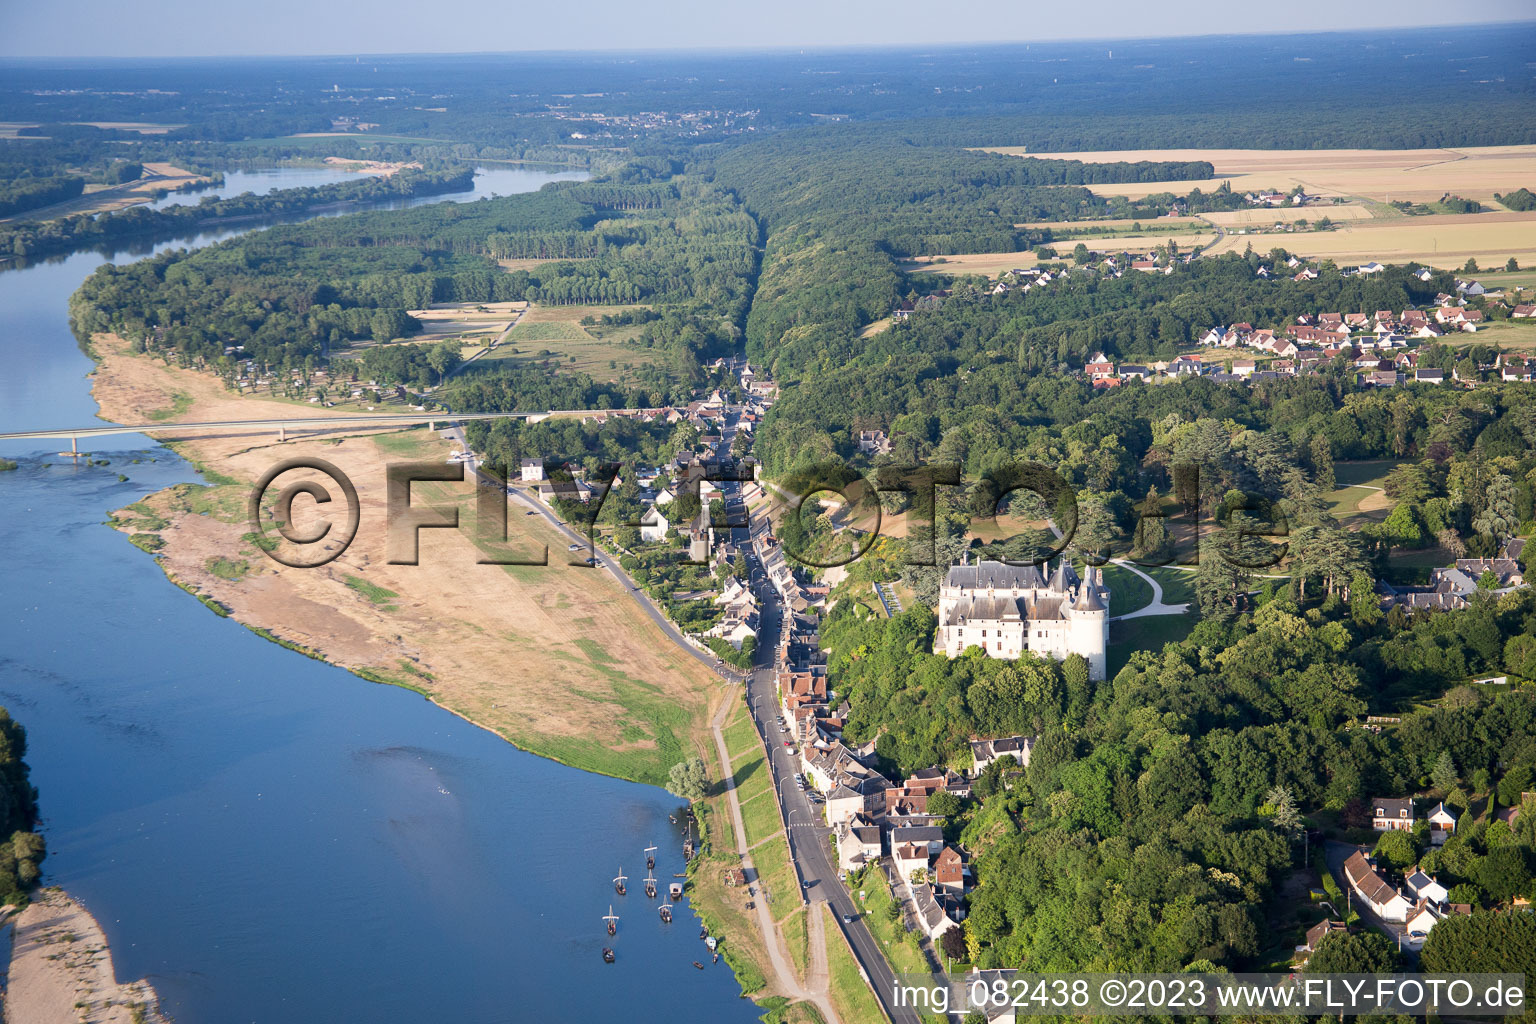 Chaumont-sur-Loire dans le département Loir et Cher, France vue d'en haut